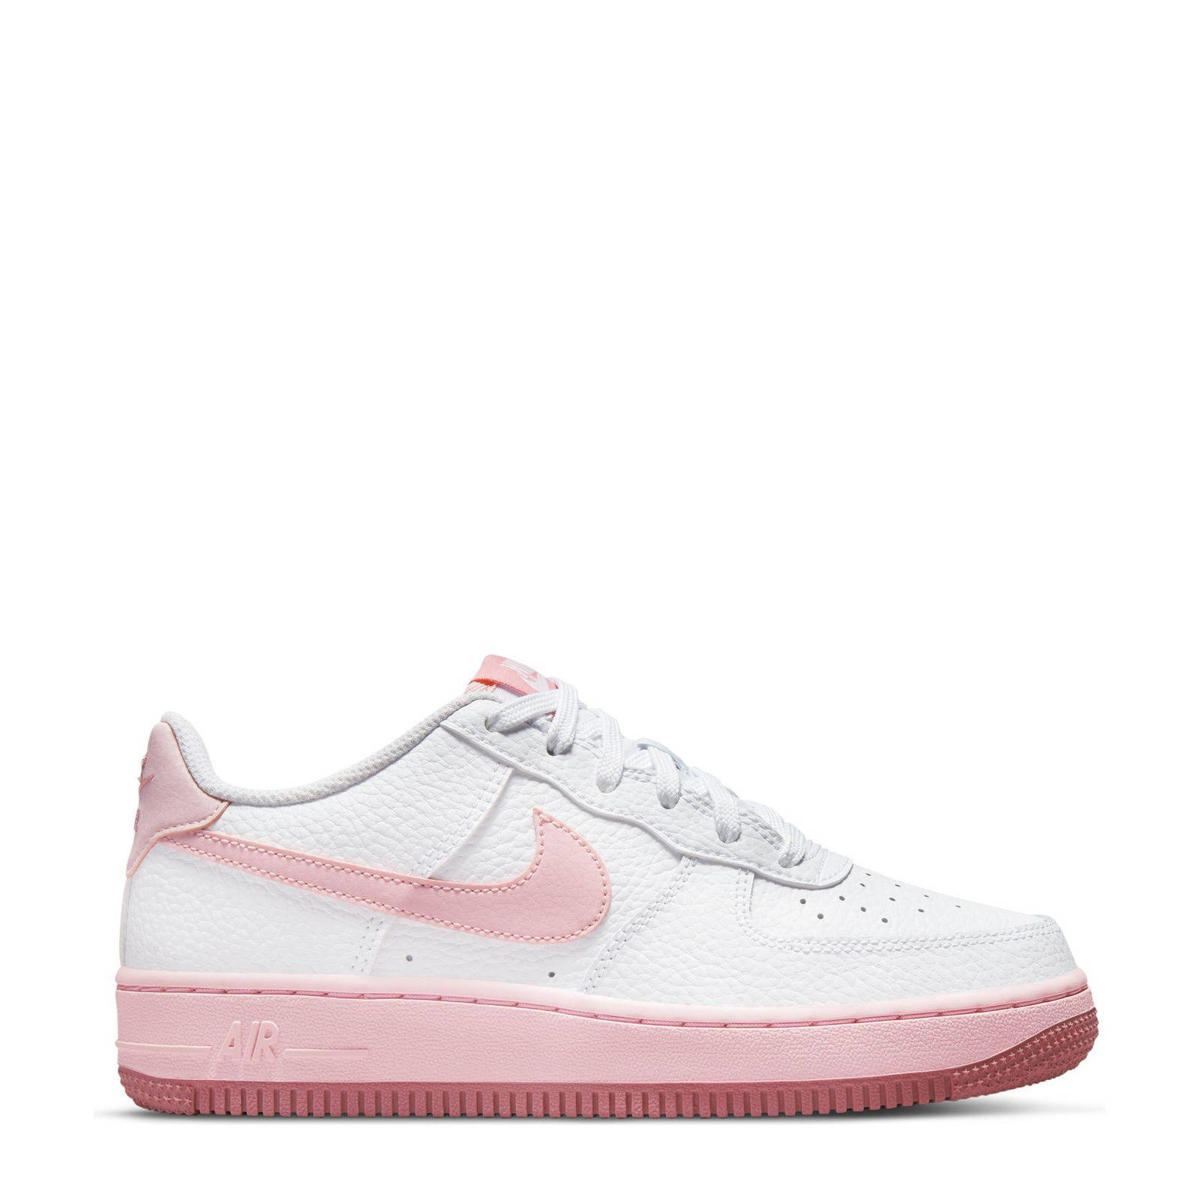 achterstalligheid eetbaar Behoren Nike Air Force 1 sneakers wit/roze | wehkamp